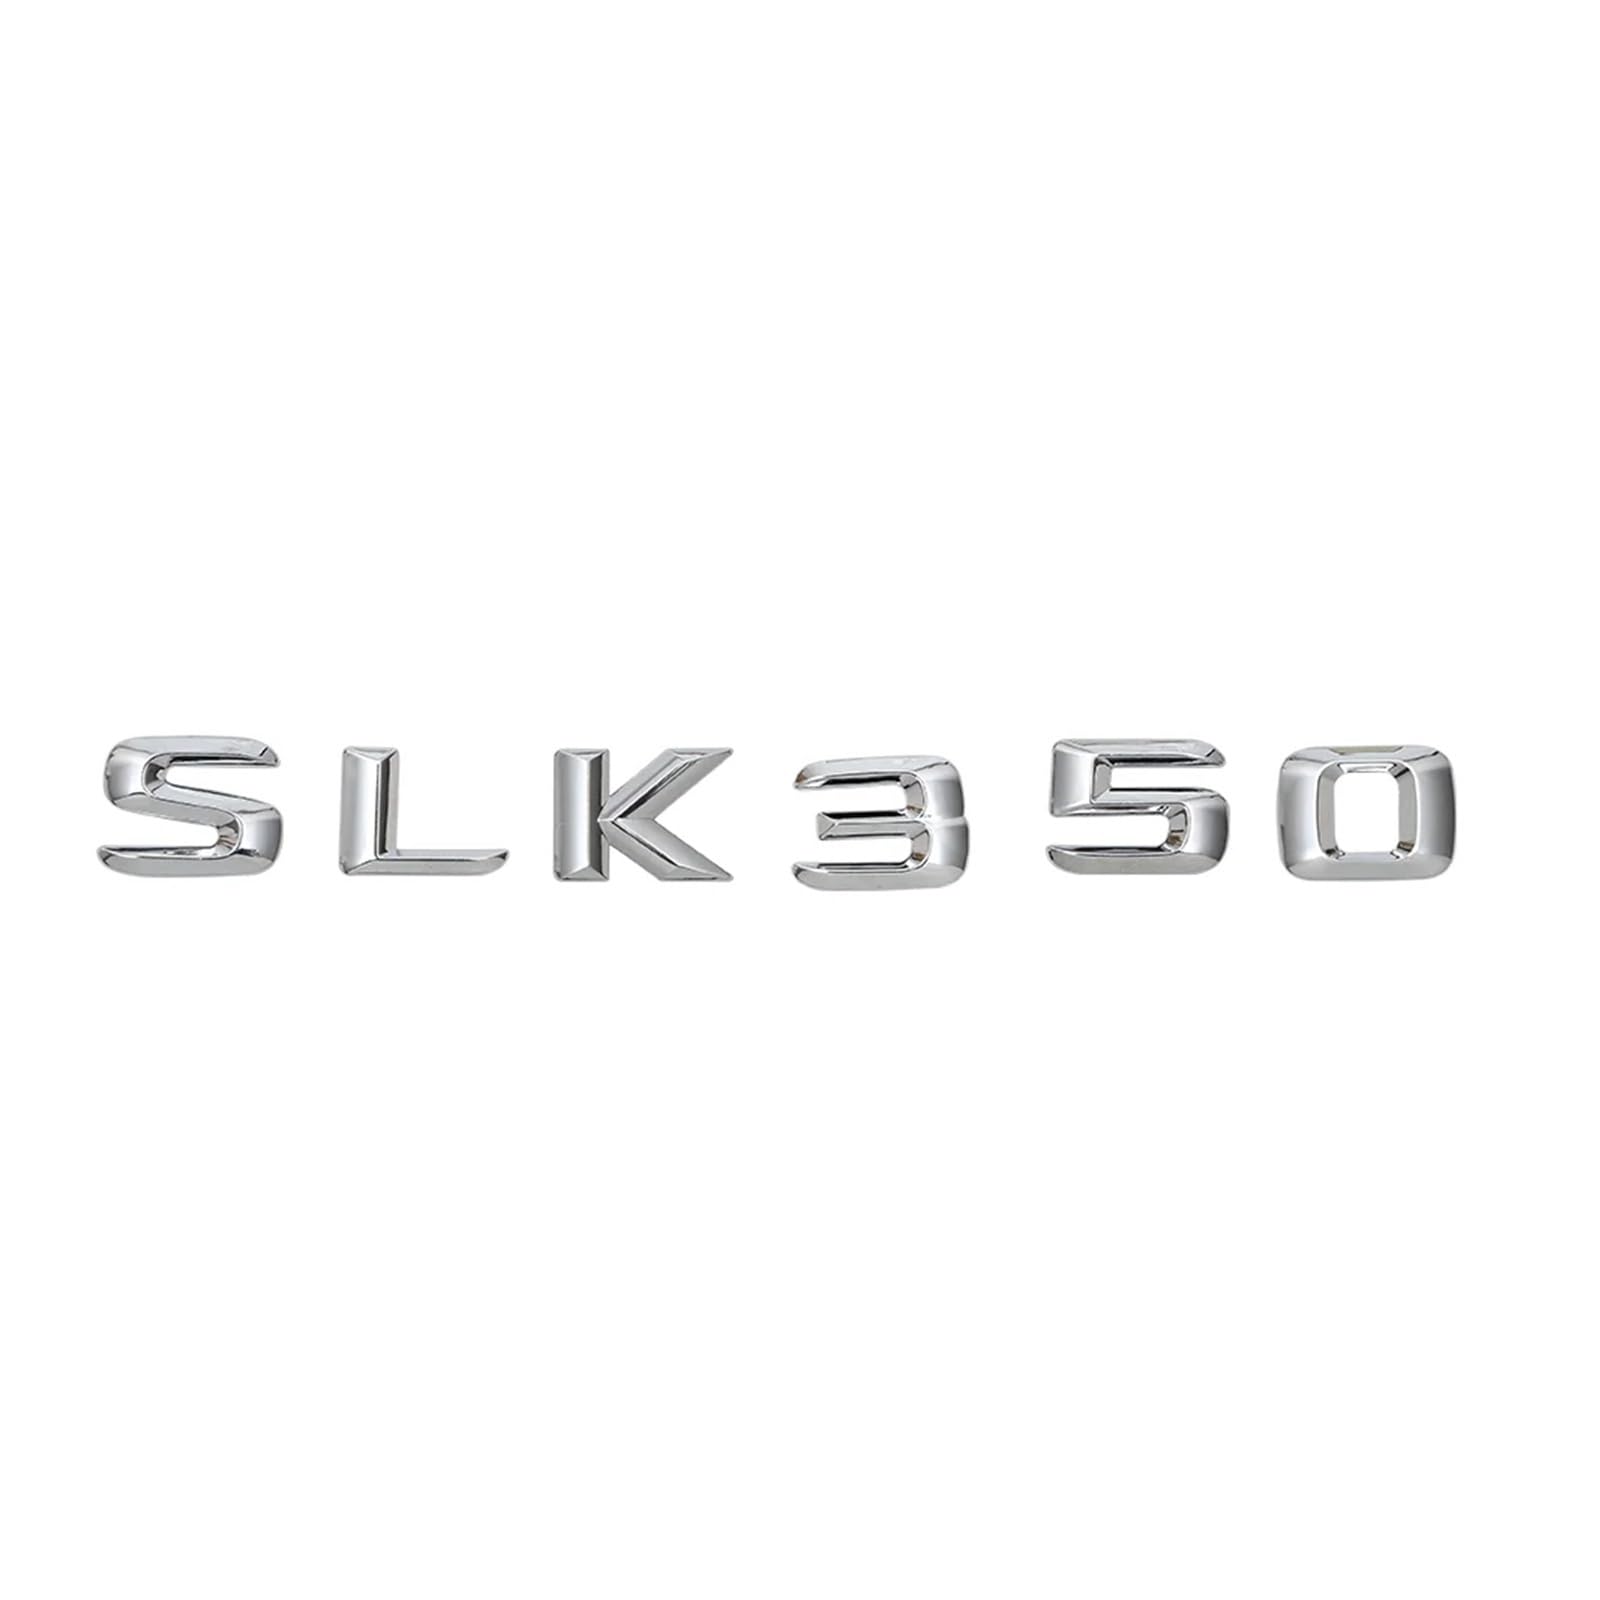 yzw6688 Chrom glänzendes Silber „SLK 350“ Kofferraum-hintere Buchstaben Wort-Abzeichen-Emblem Buchstaben-Aufkleberaufkleber for SLK350 von GerRit